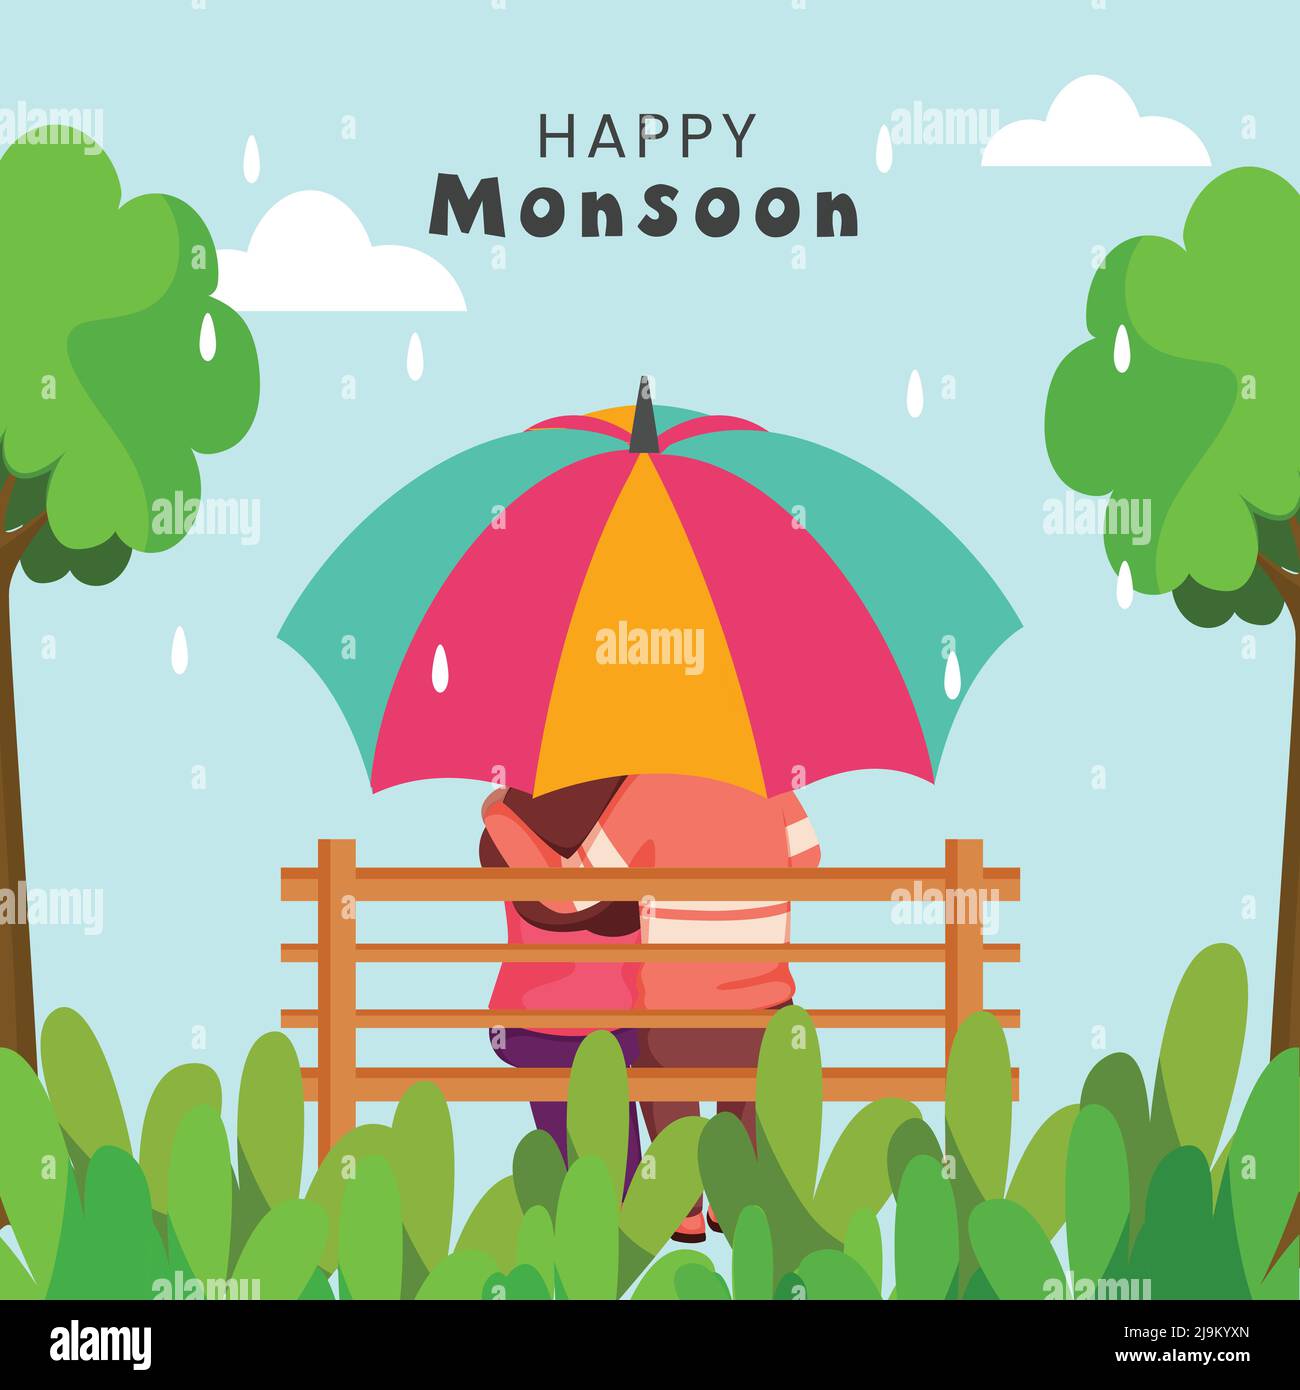 Happy Monsoon Poster Design Mit Rückansicht Des Jungen Paares Sitzt Auf Der Bank Unter Dem Regenschirm Und Bäume Auf Wassertropfen Cyan Hintergrund. Stock Vektor